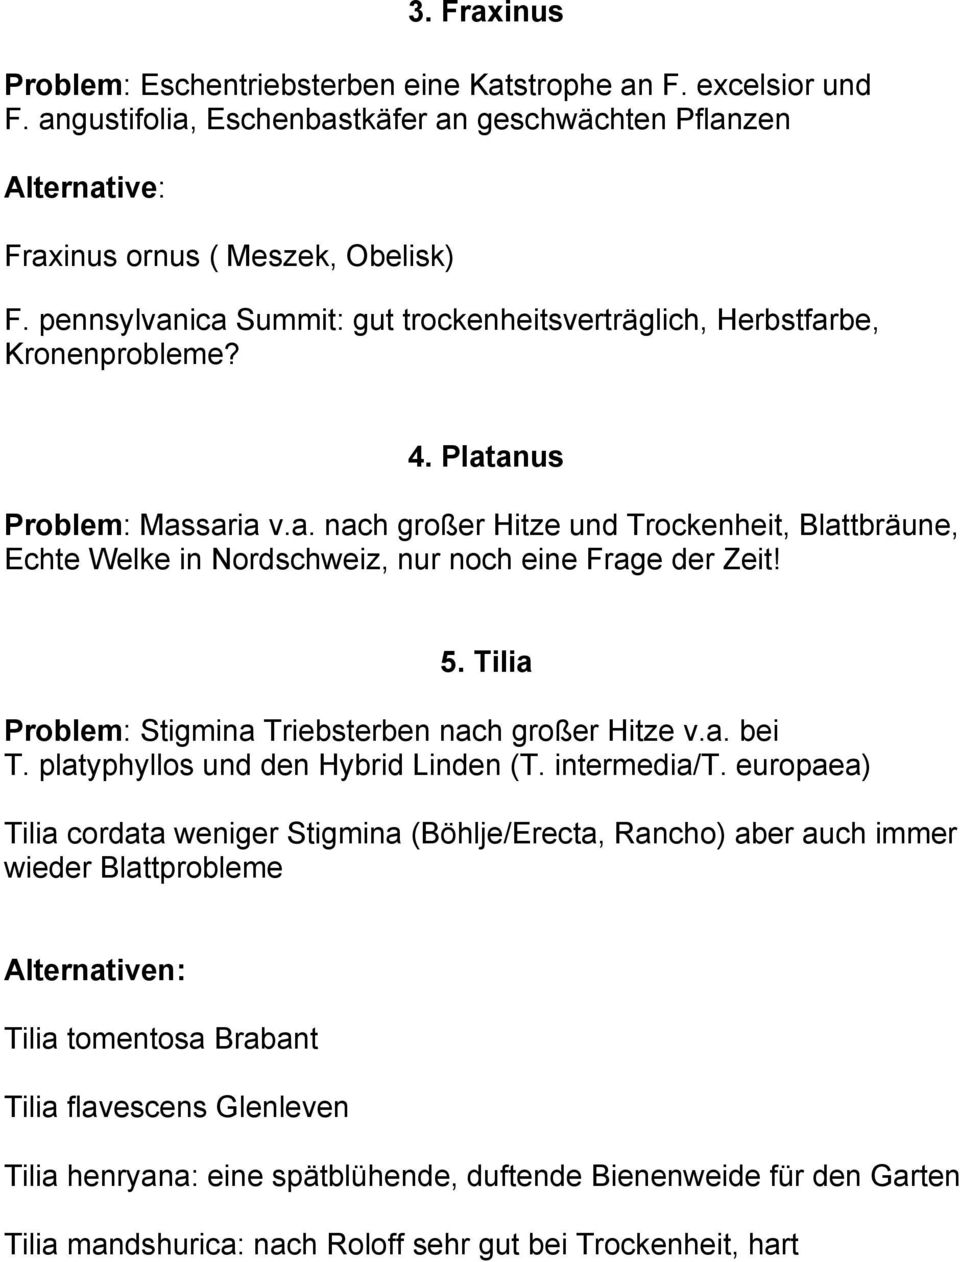 5. Tilia Problem: Stigmina Triebsterben nach großer Hitze v.a. bei T. platyphyllos und den Hybrid Linden (T. intermedia/t.